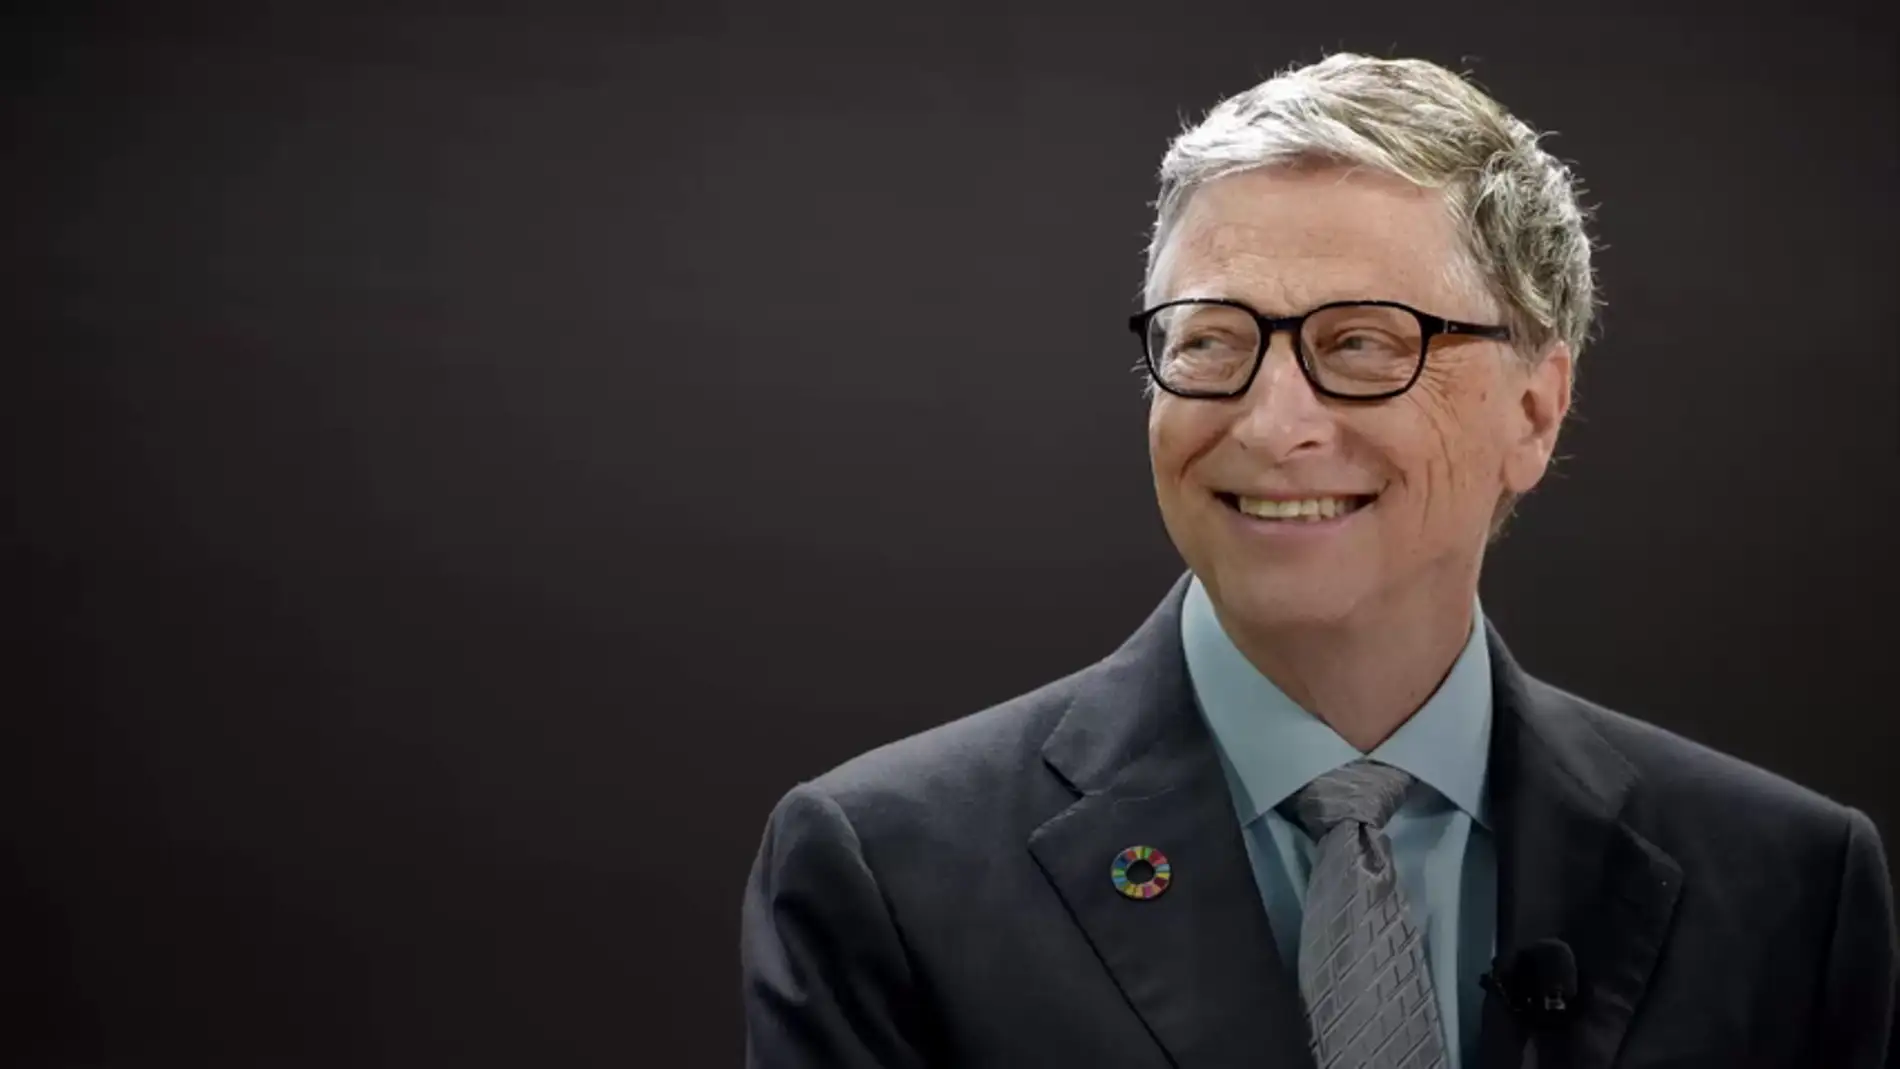 Bill Gates participa en un Amigo Invisible online y le regala algo gigantesco a una desconocida